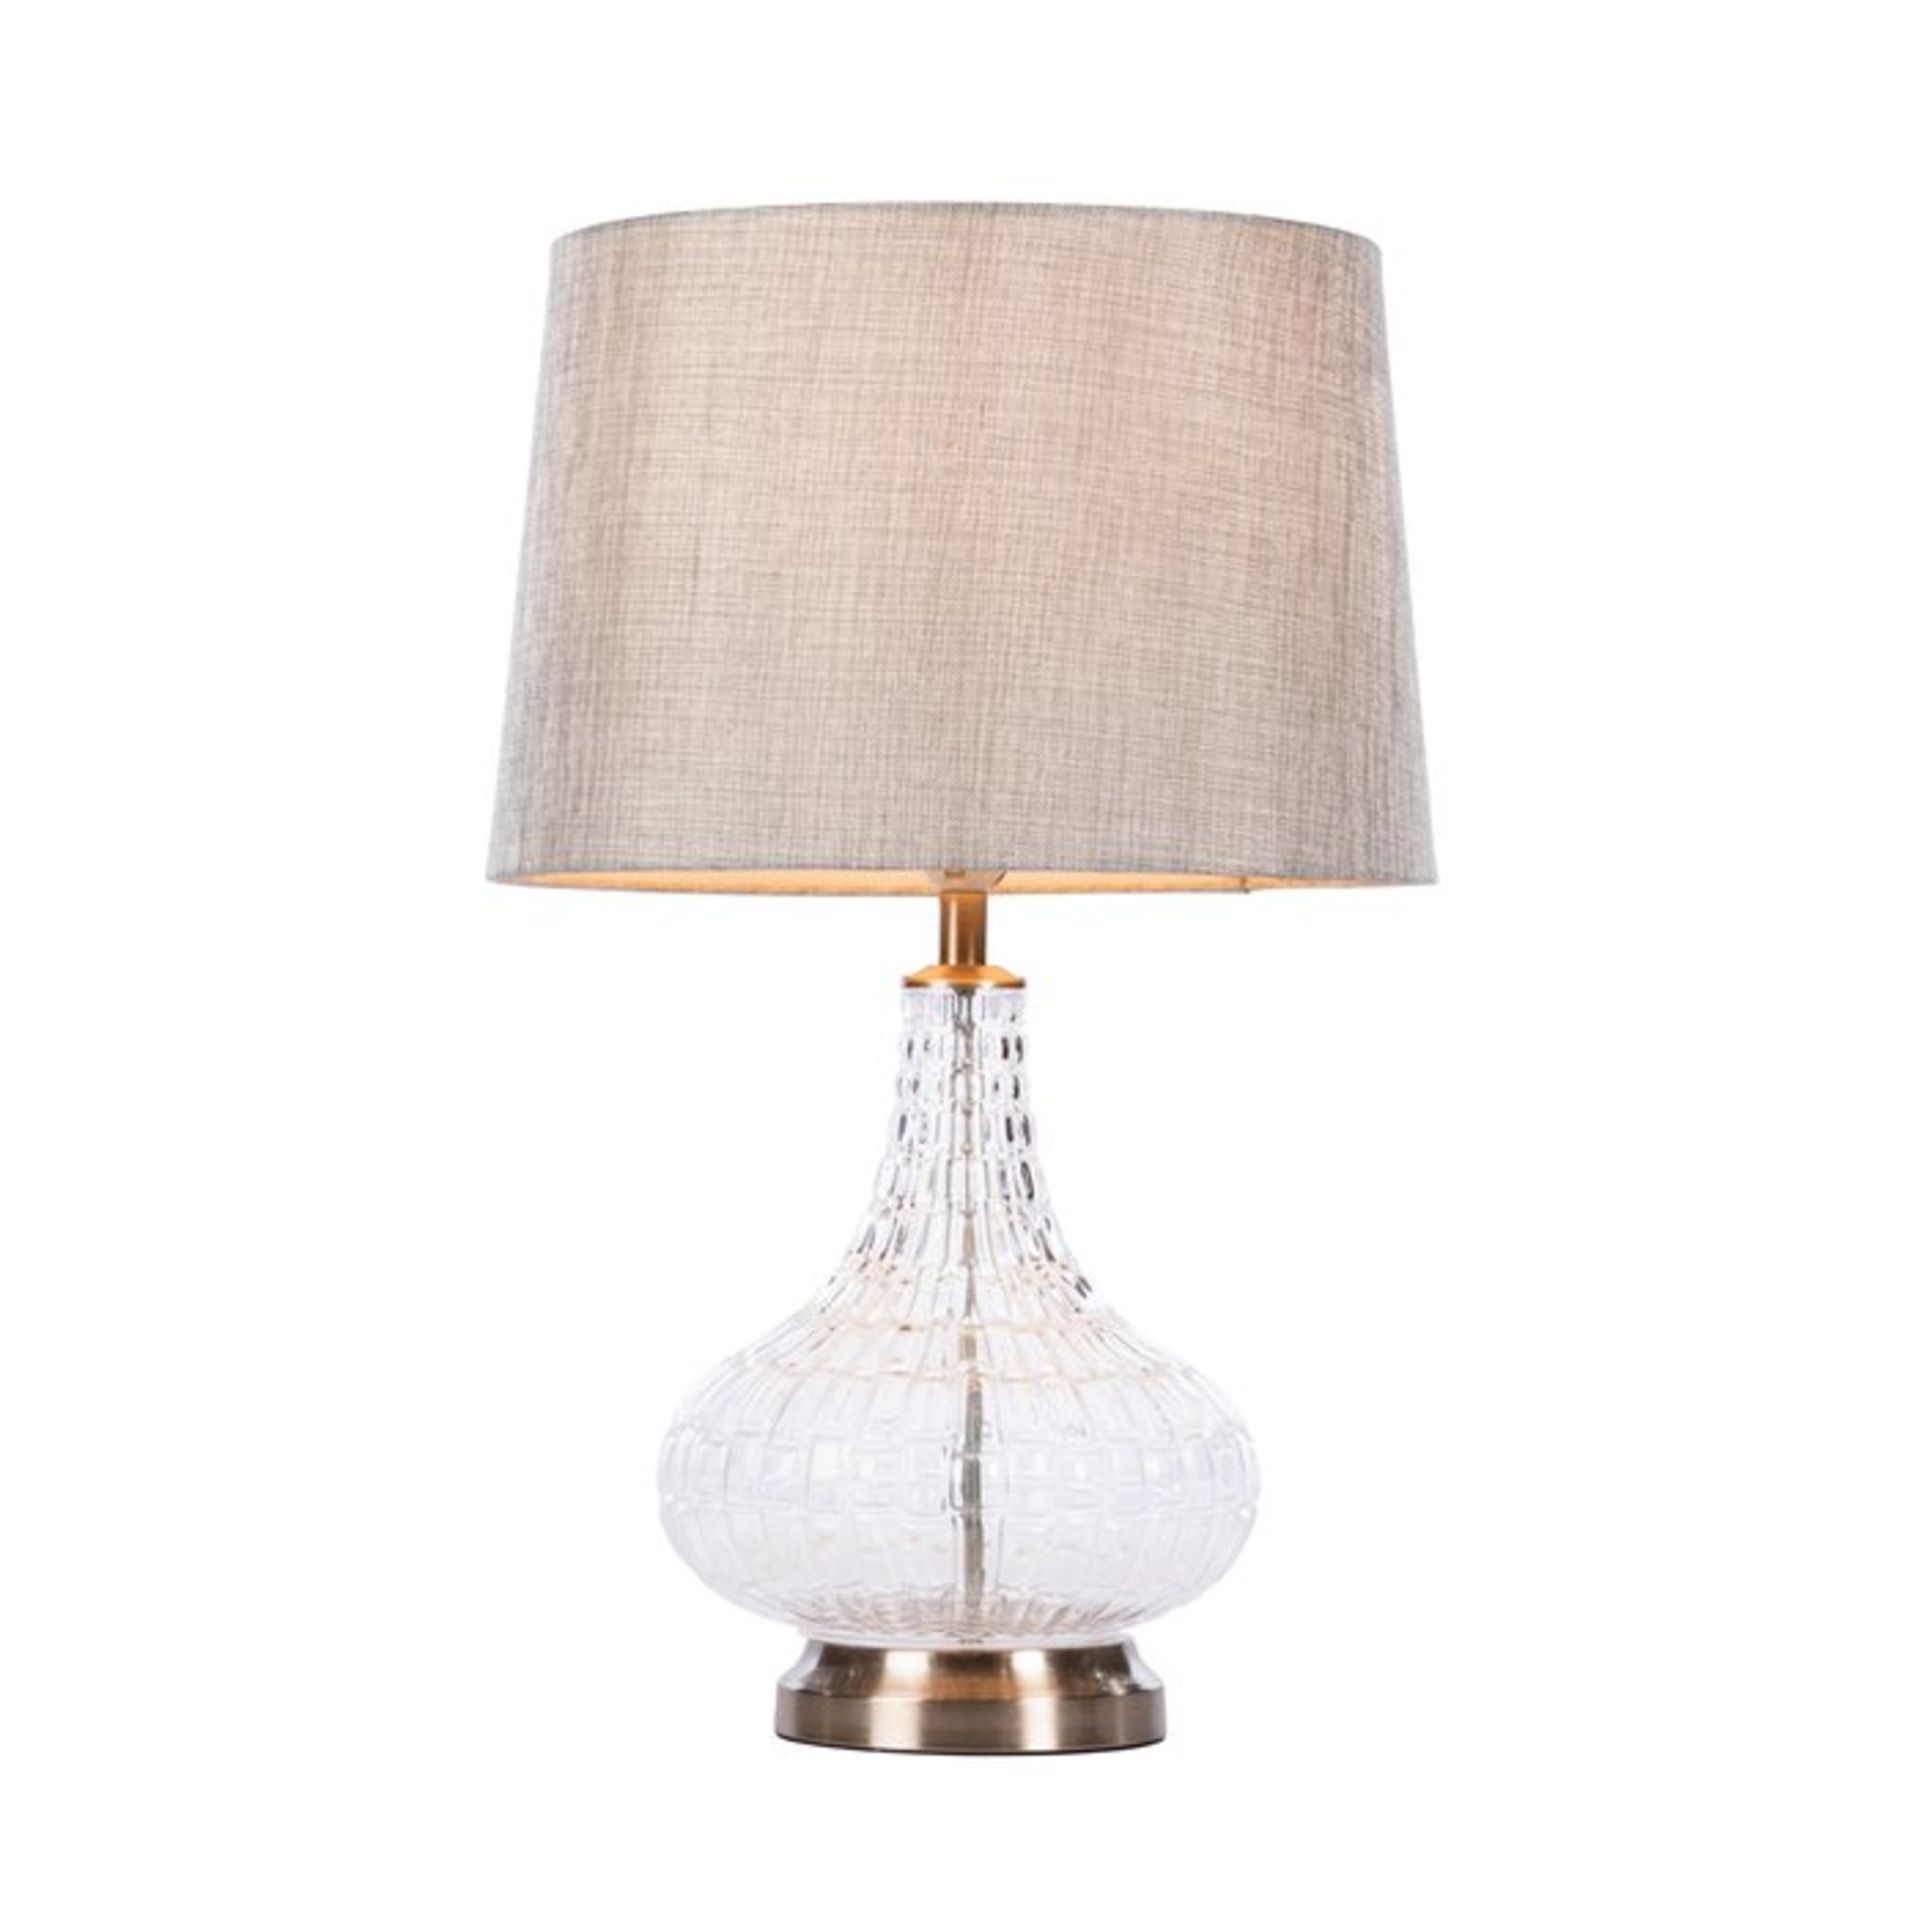 Amarion 63cm Table Lamp x 2 - RRP £106.99 Each